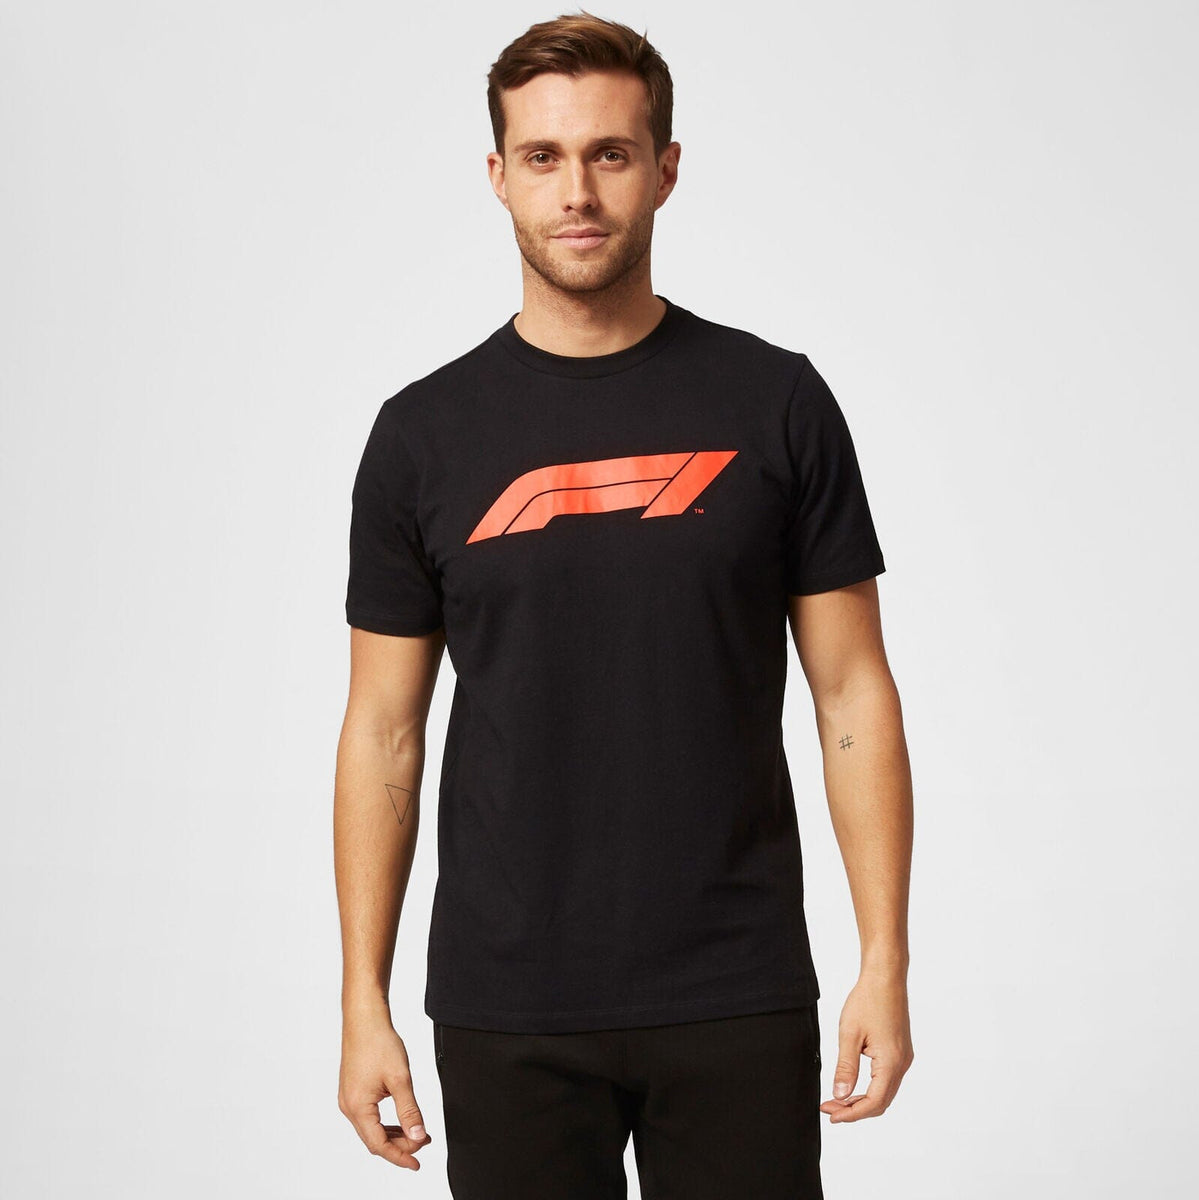 Formule 1' T-shirt premium Homme